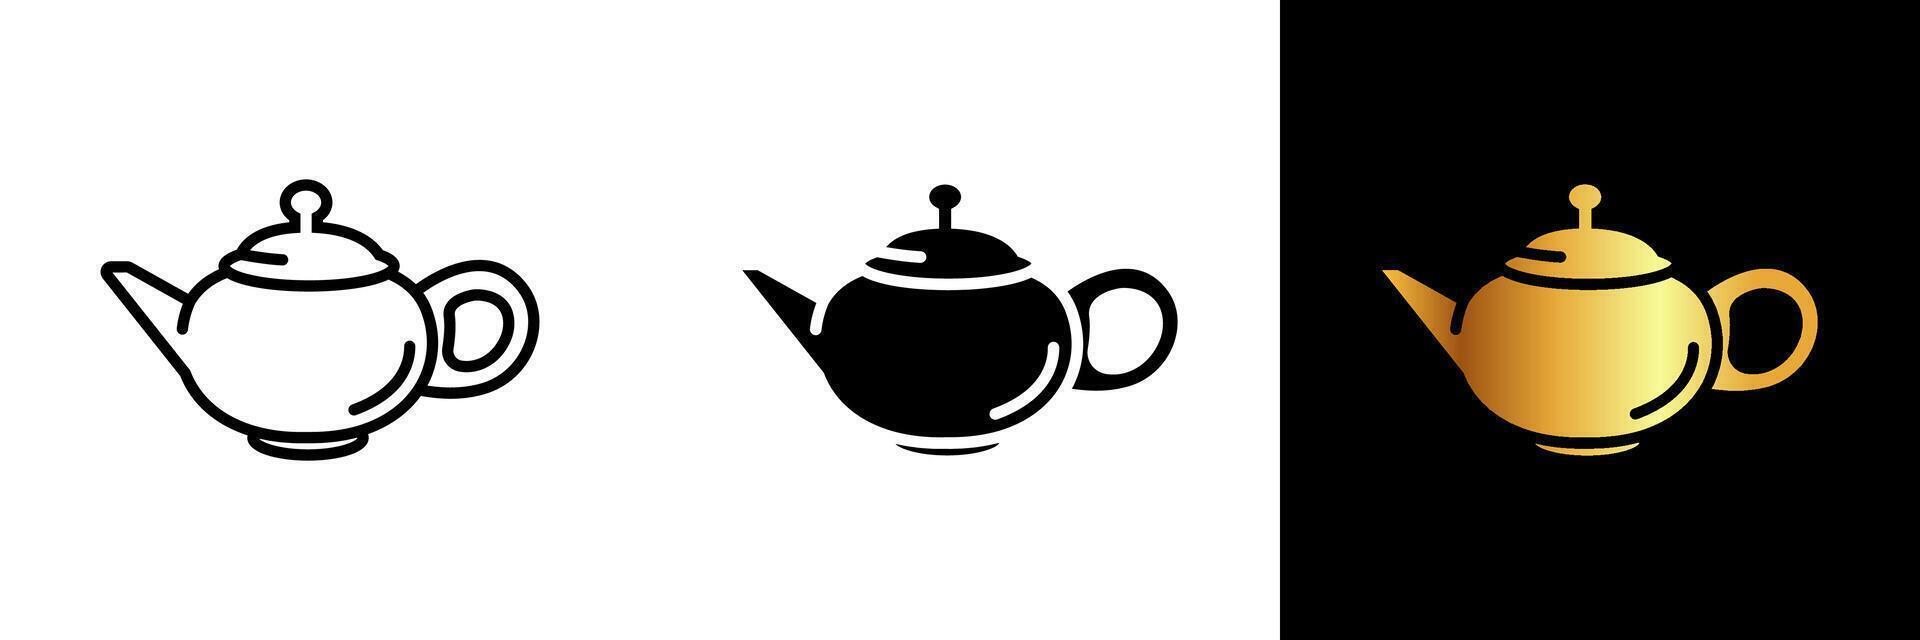 een elegant en tijdloos icoon vertegenwoordigen een theepot, vastleggen de essence van thee cultuur, steil tradities, en verfijnd momenten. vector